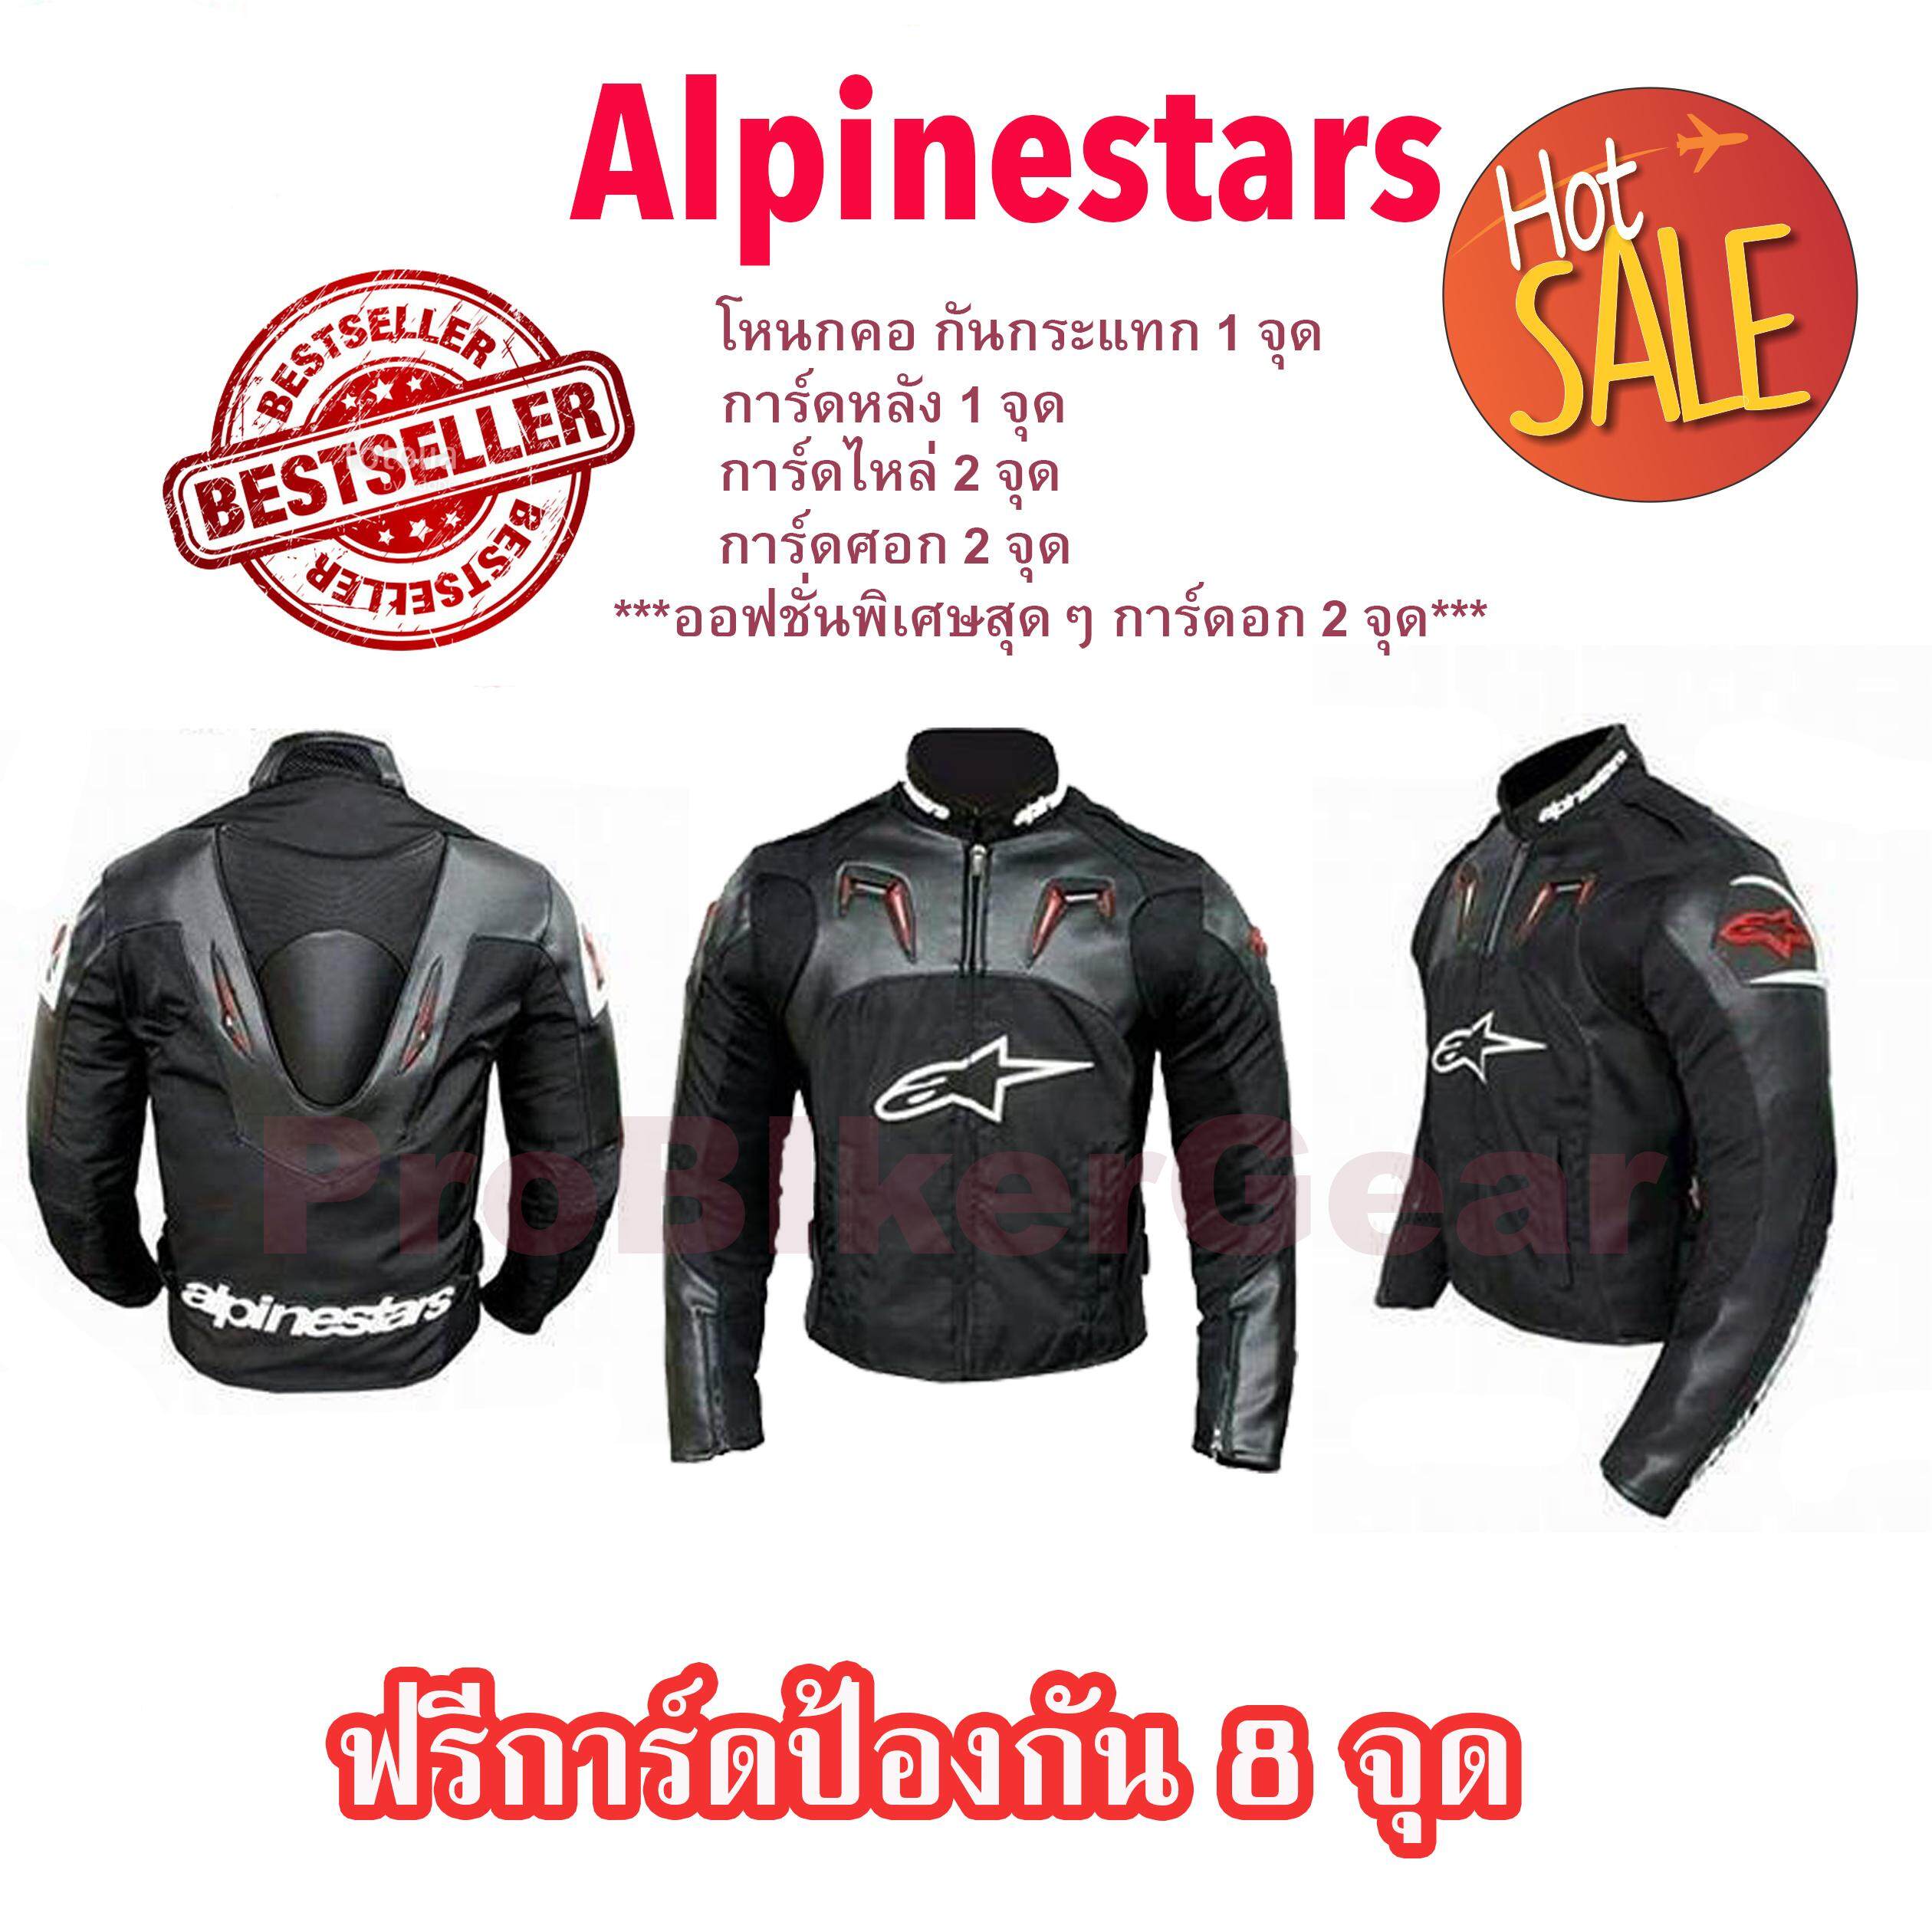 เสื้อการ์ด Alpinestars AL013 เสื้อแจ็คเก็ตมอเตอร์ไซค์ เสื้อAlpinestar เสื้อการ์ดAlipinestar al013 เสื้อขี่มอเตอร์ไซค์ เสื้อบิ๊กไบค์ เสื้อการ์ดบิ๊กไบค์